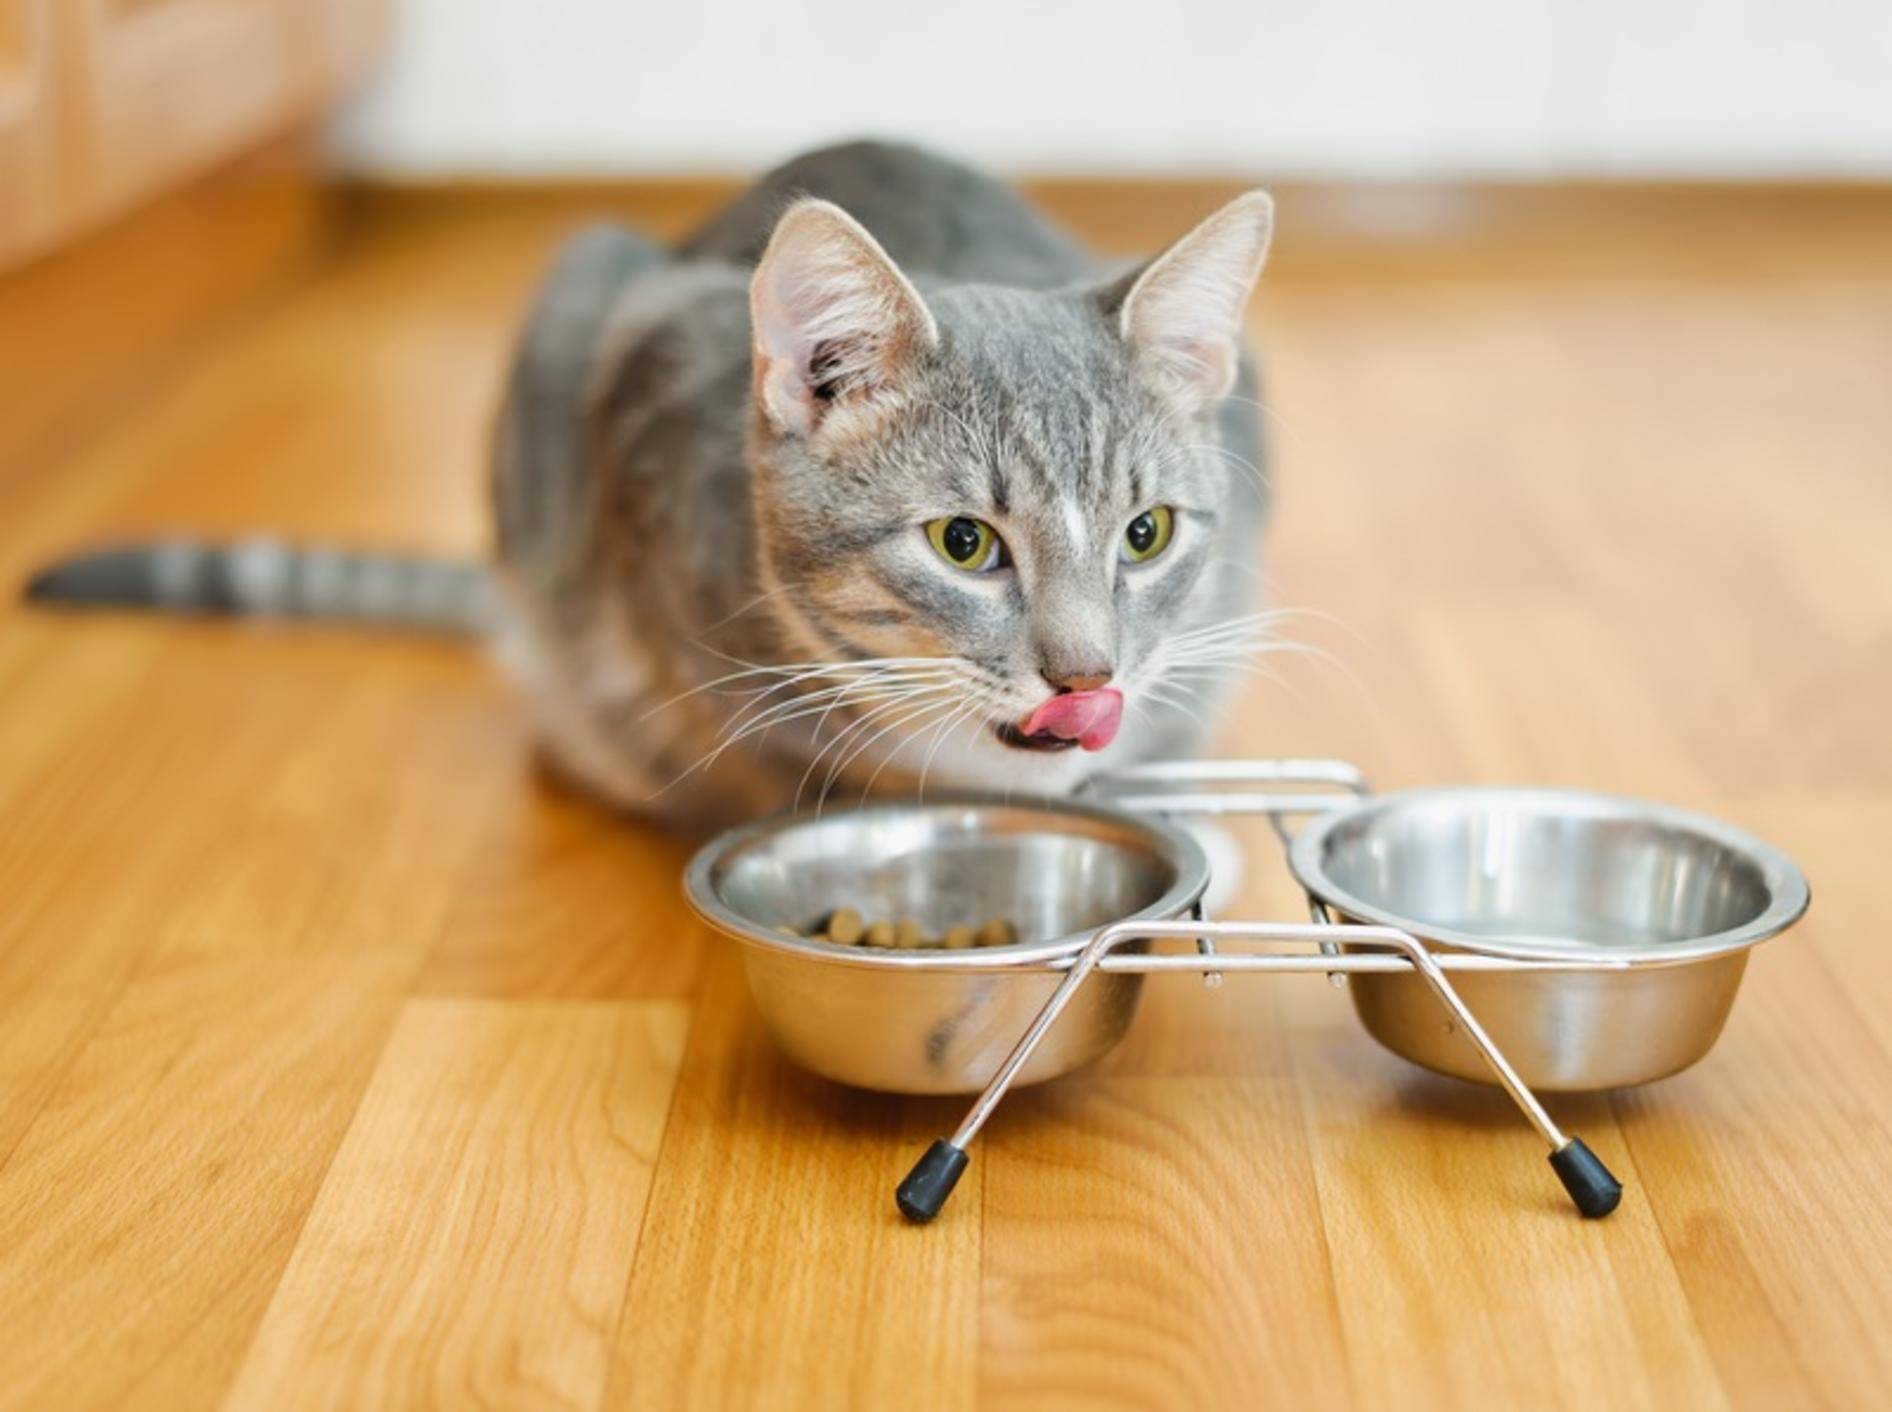 Что тех мест голодный рыскал. Миска для кота. Голодный кот. Кошка возле миски. Кошка возле миски с едой.